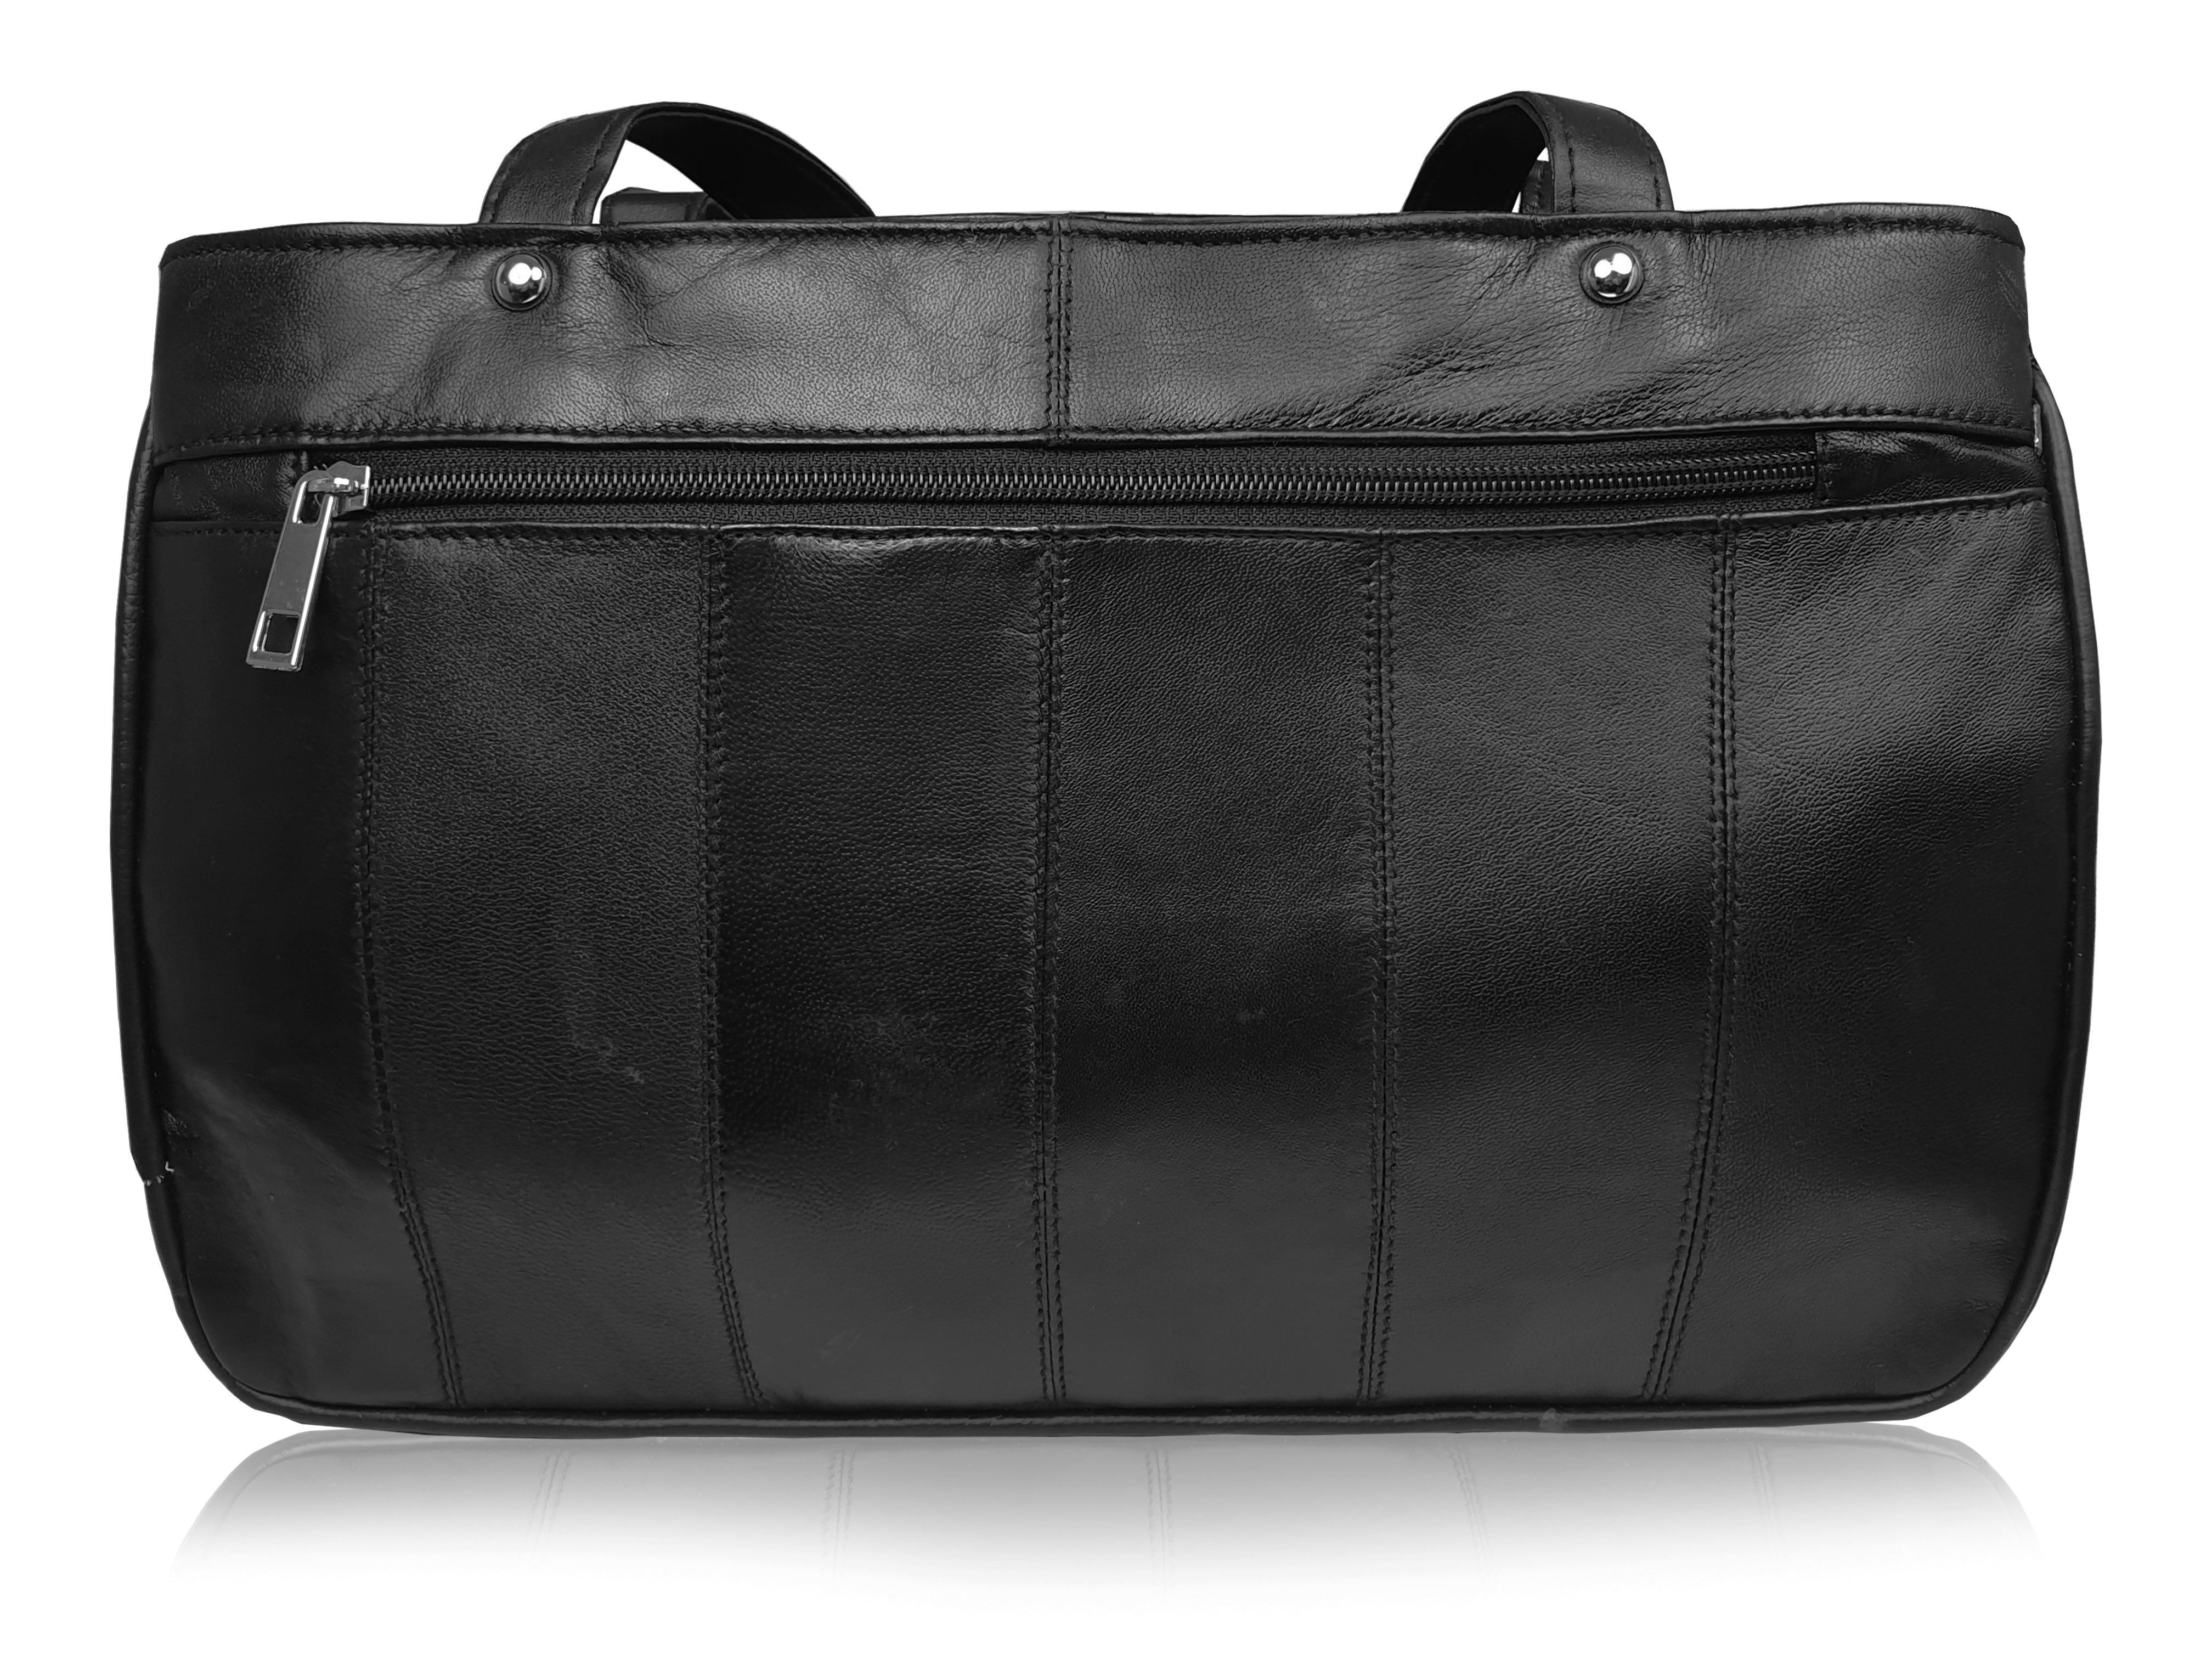 Ladies Black Real Leather Handbag - Women's Designer Size Shoulder Bag ...